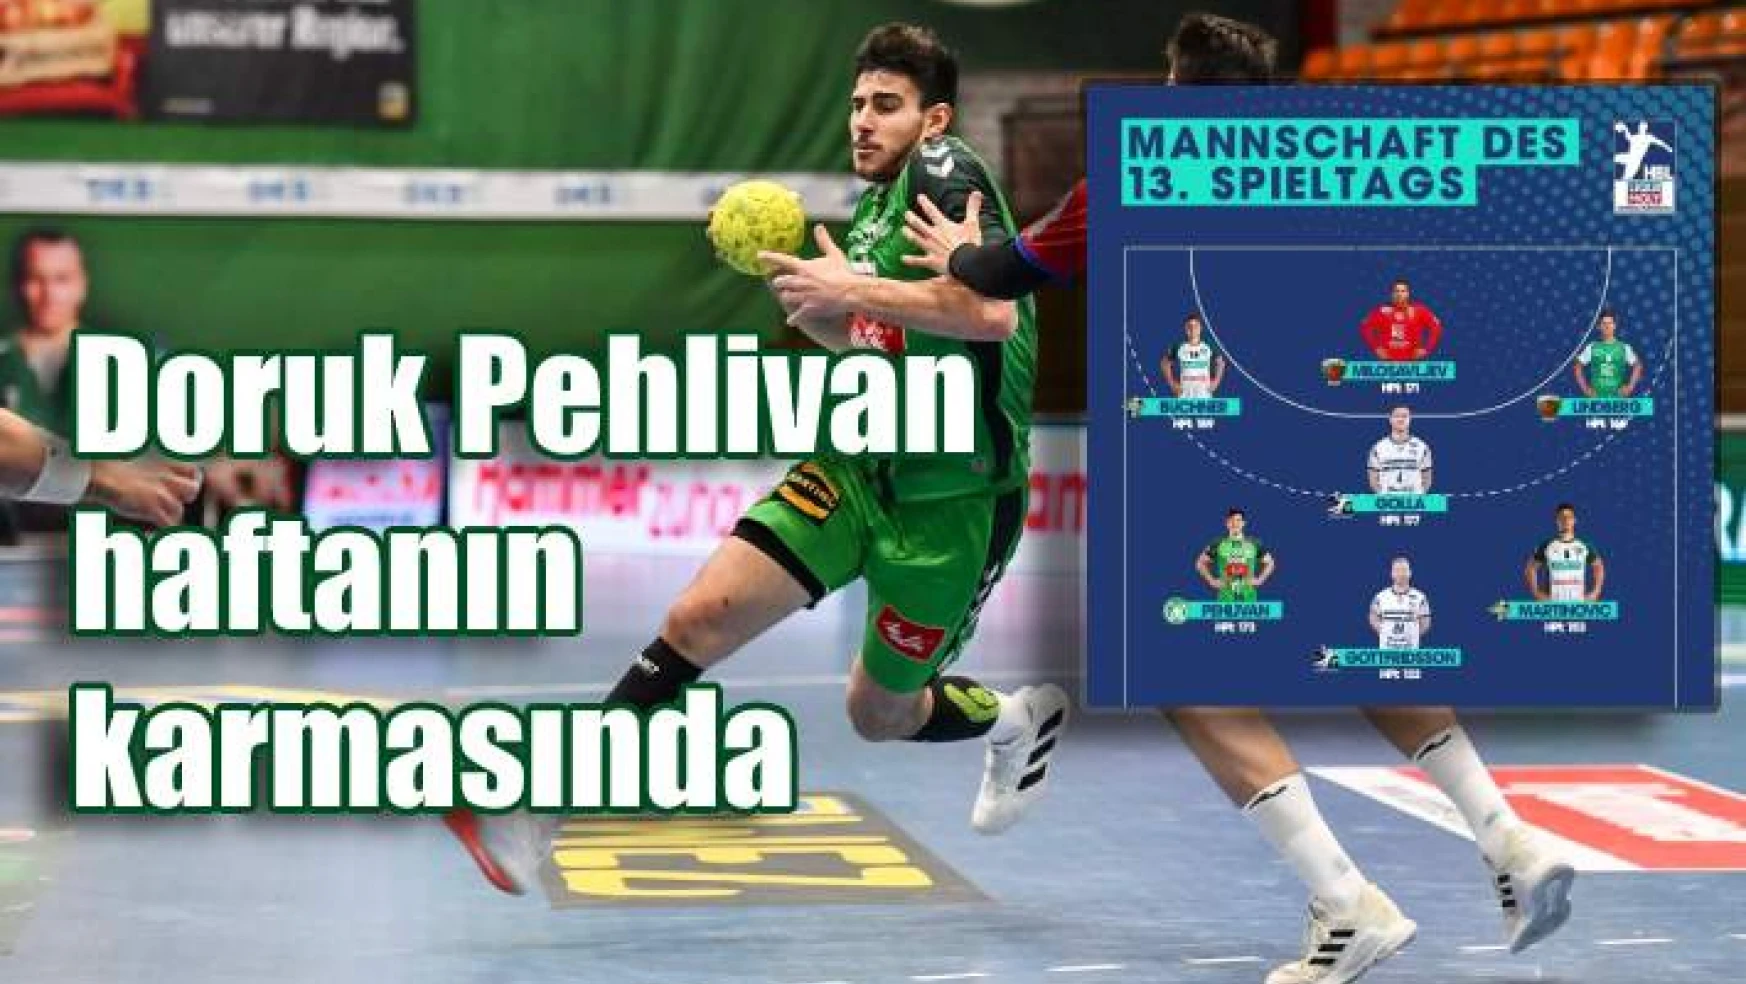 Doruk Pehlivan, Liqui Moly Bundesliga'da haftanın karmasında